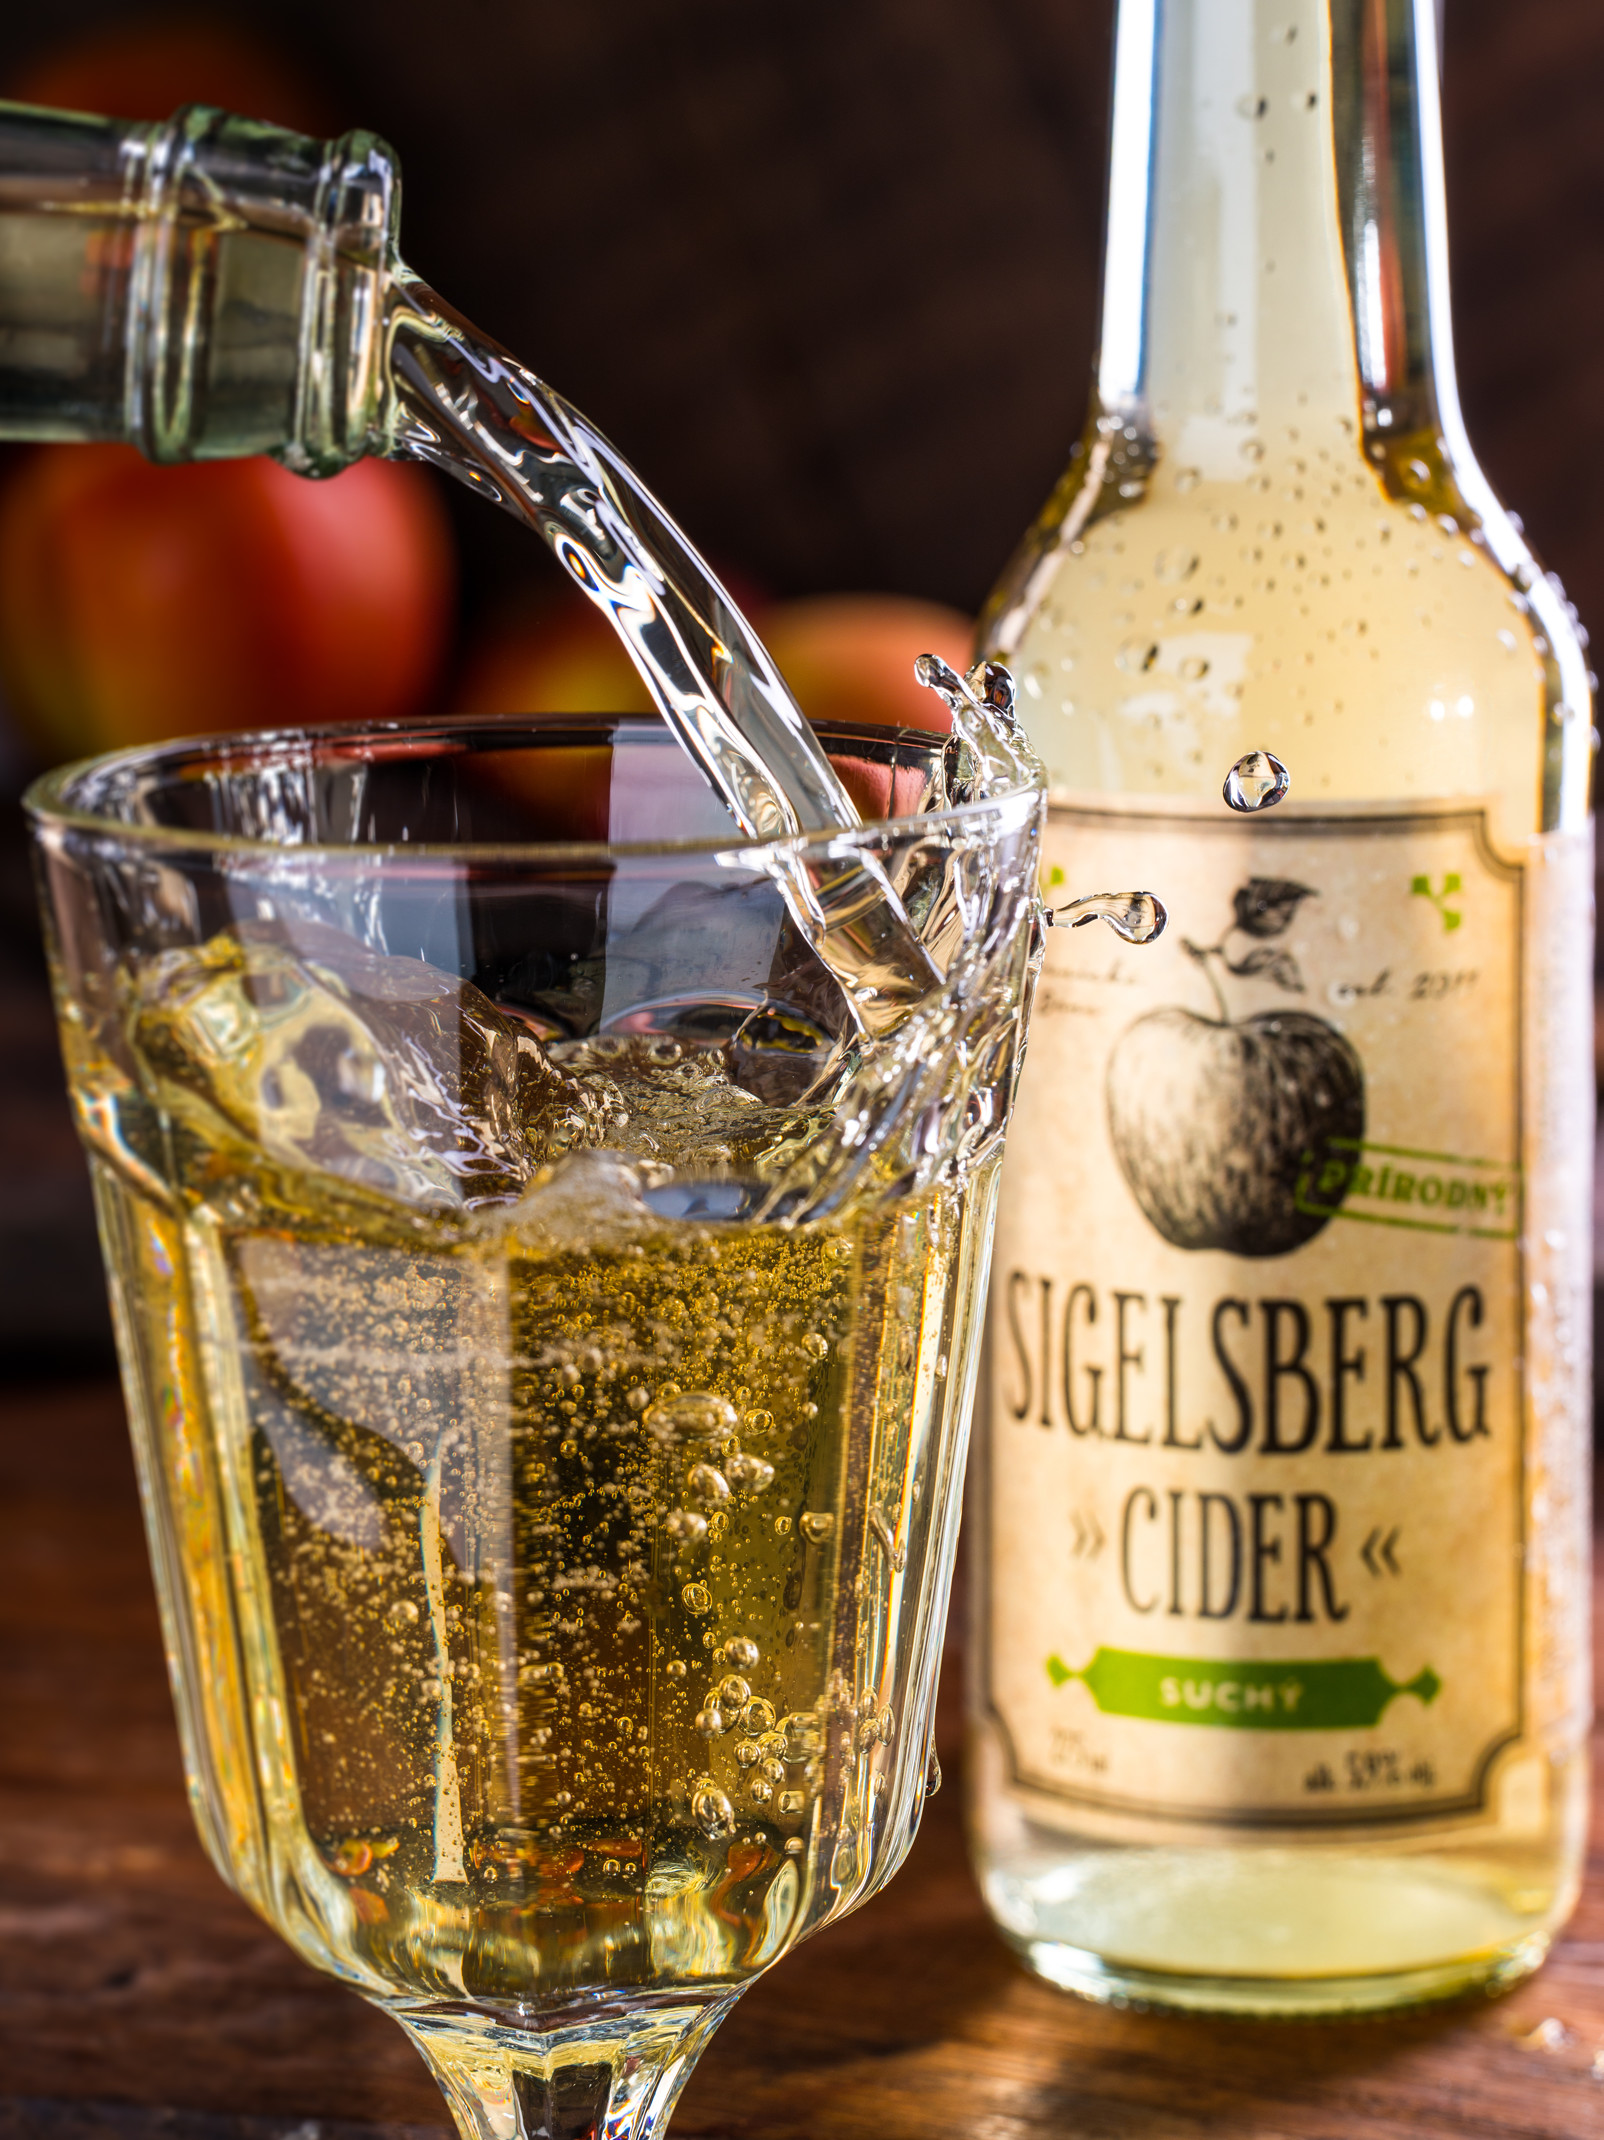 SIGELSBERG cider Dry